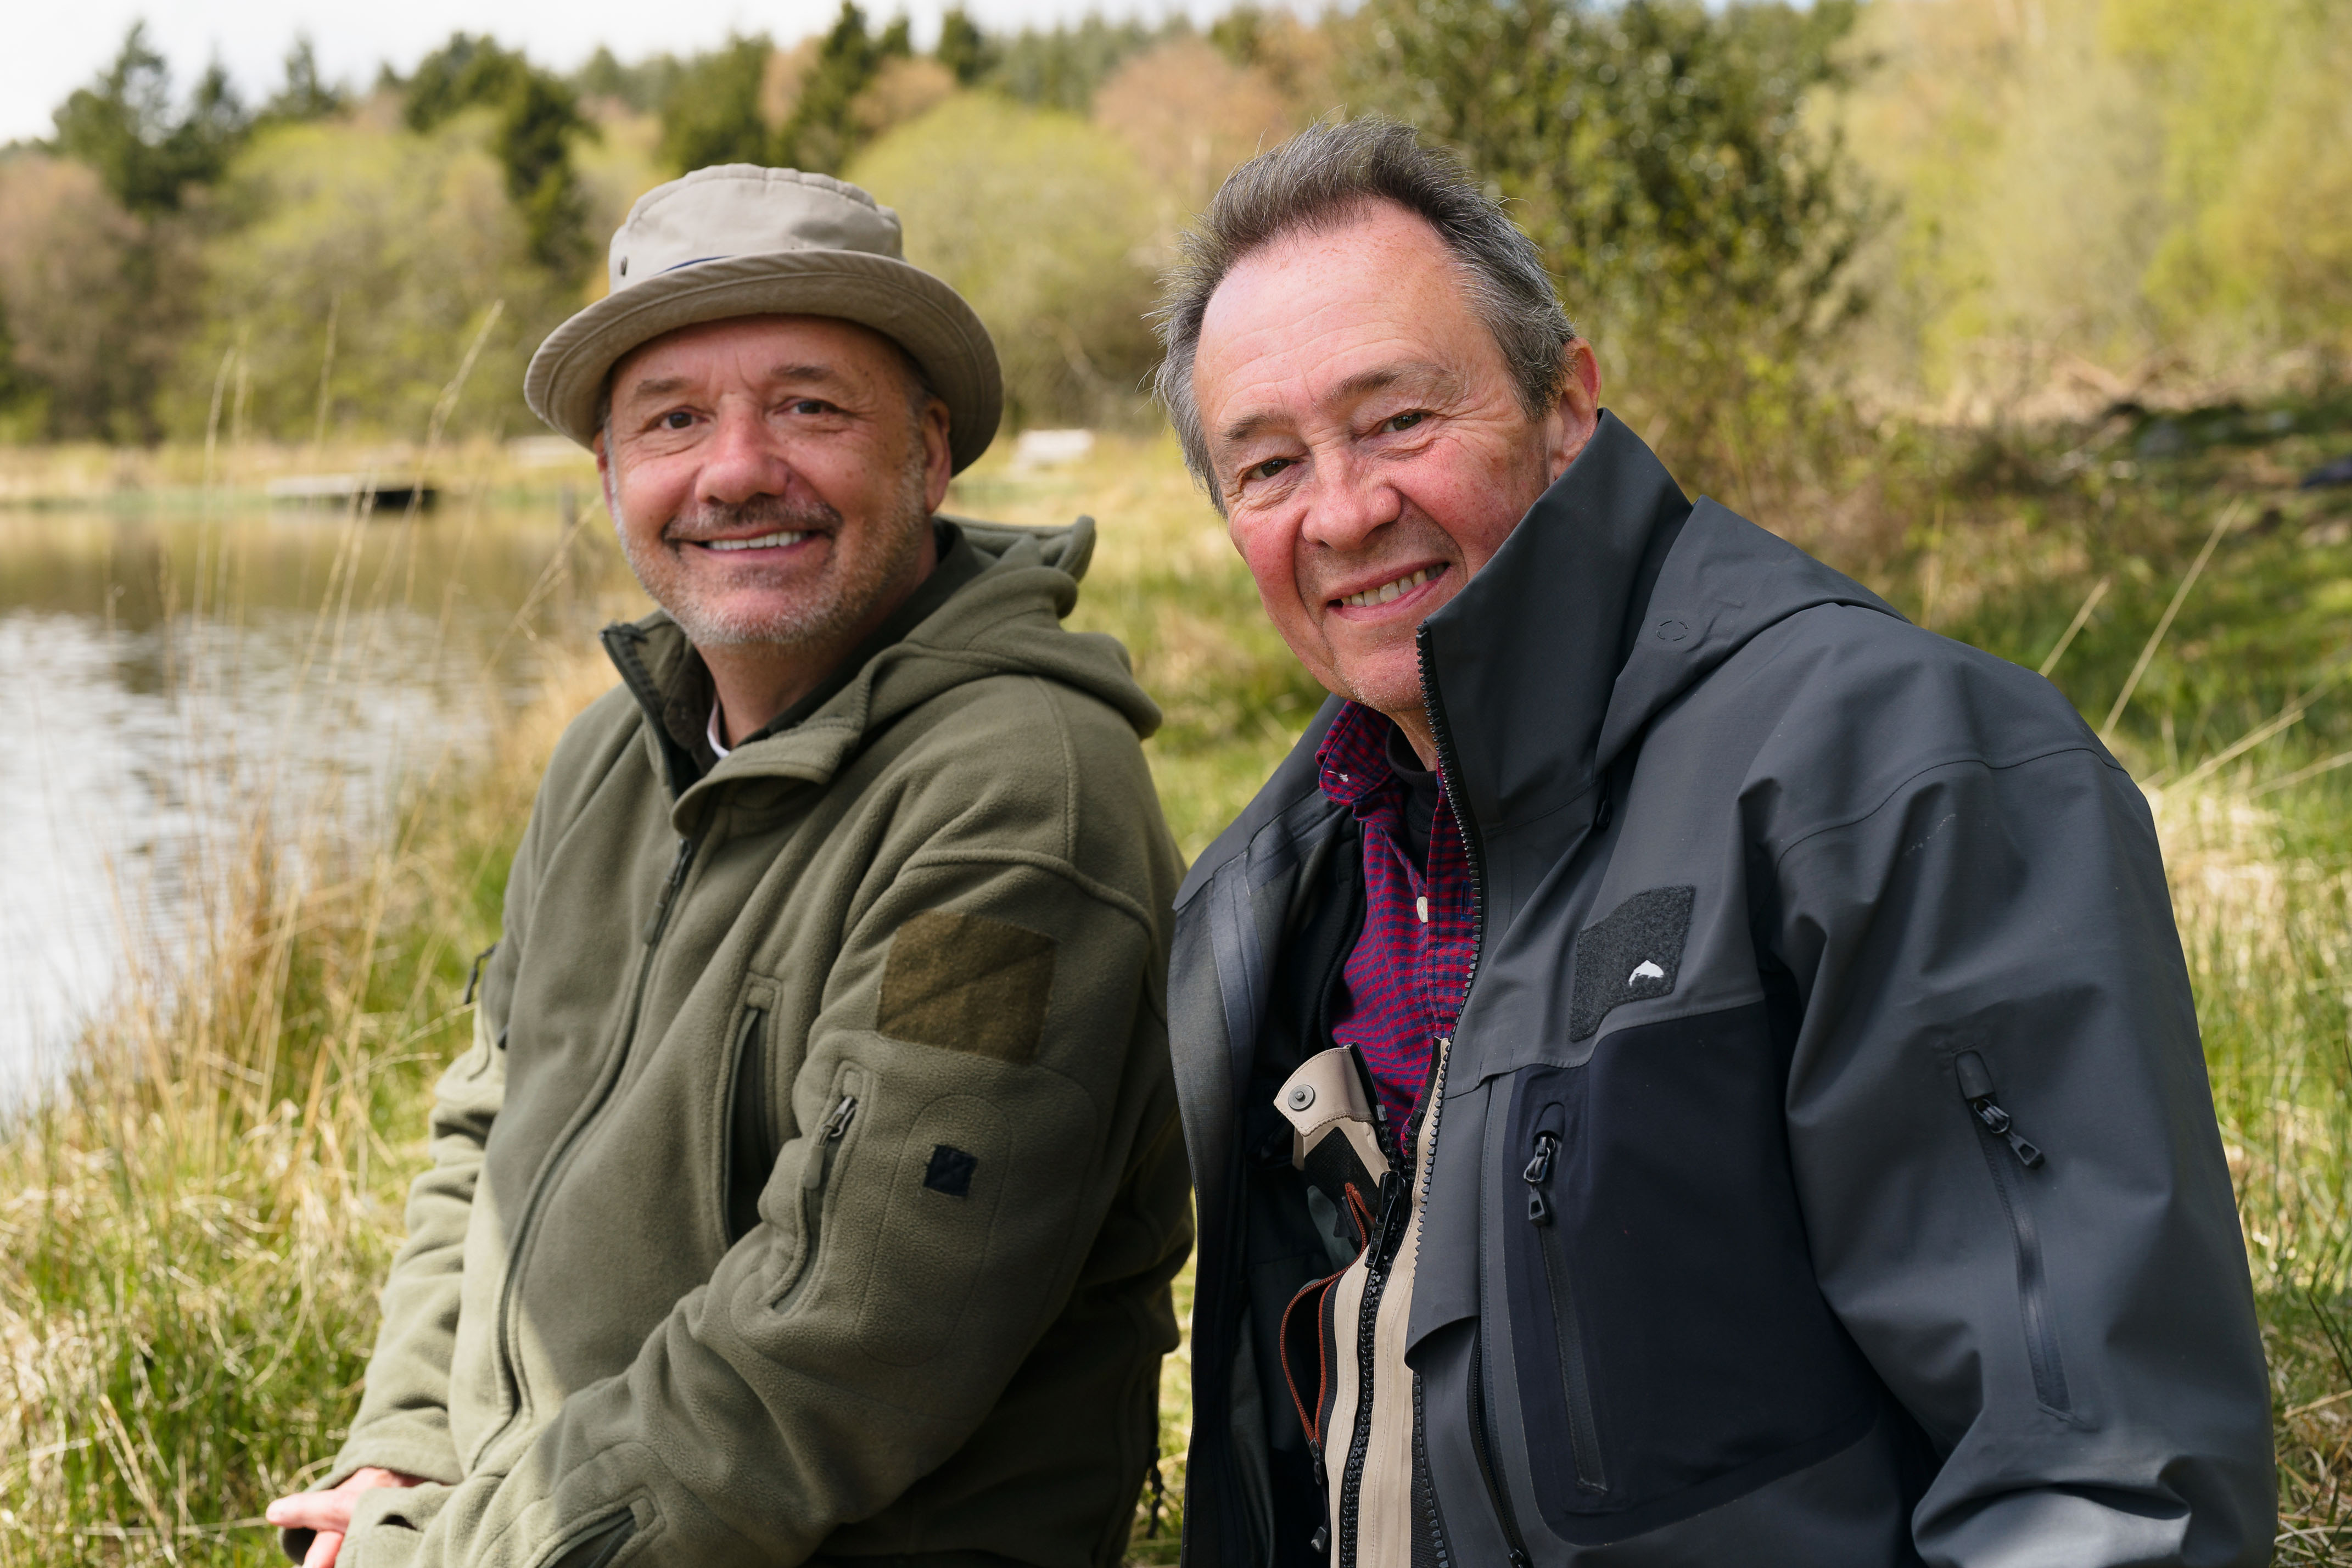 Bob Mortimer & Paul Whitehouse on Gone Fishing adventures